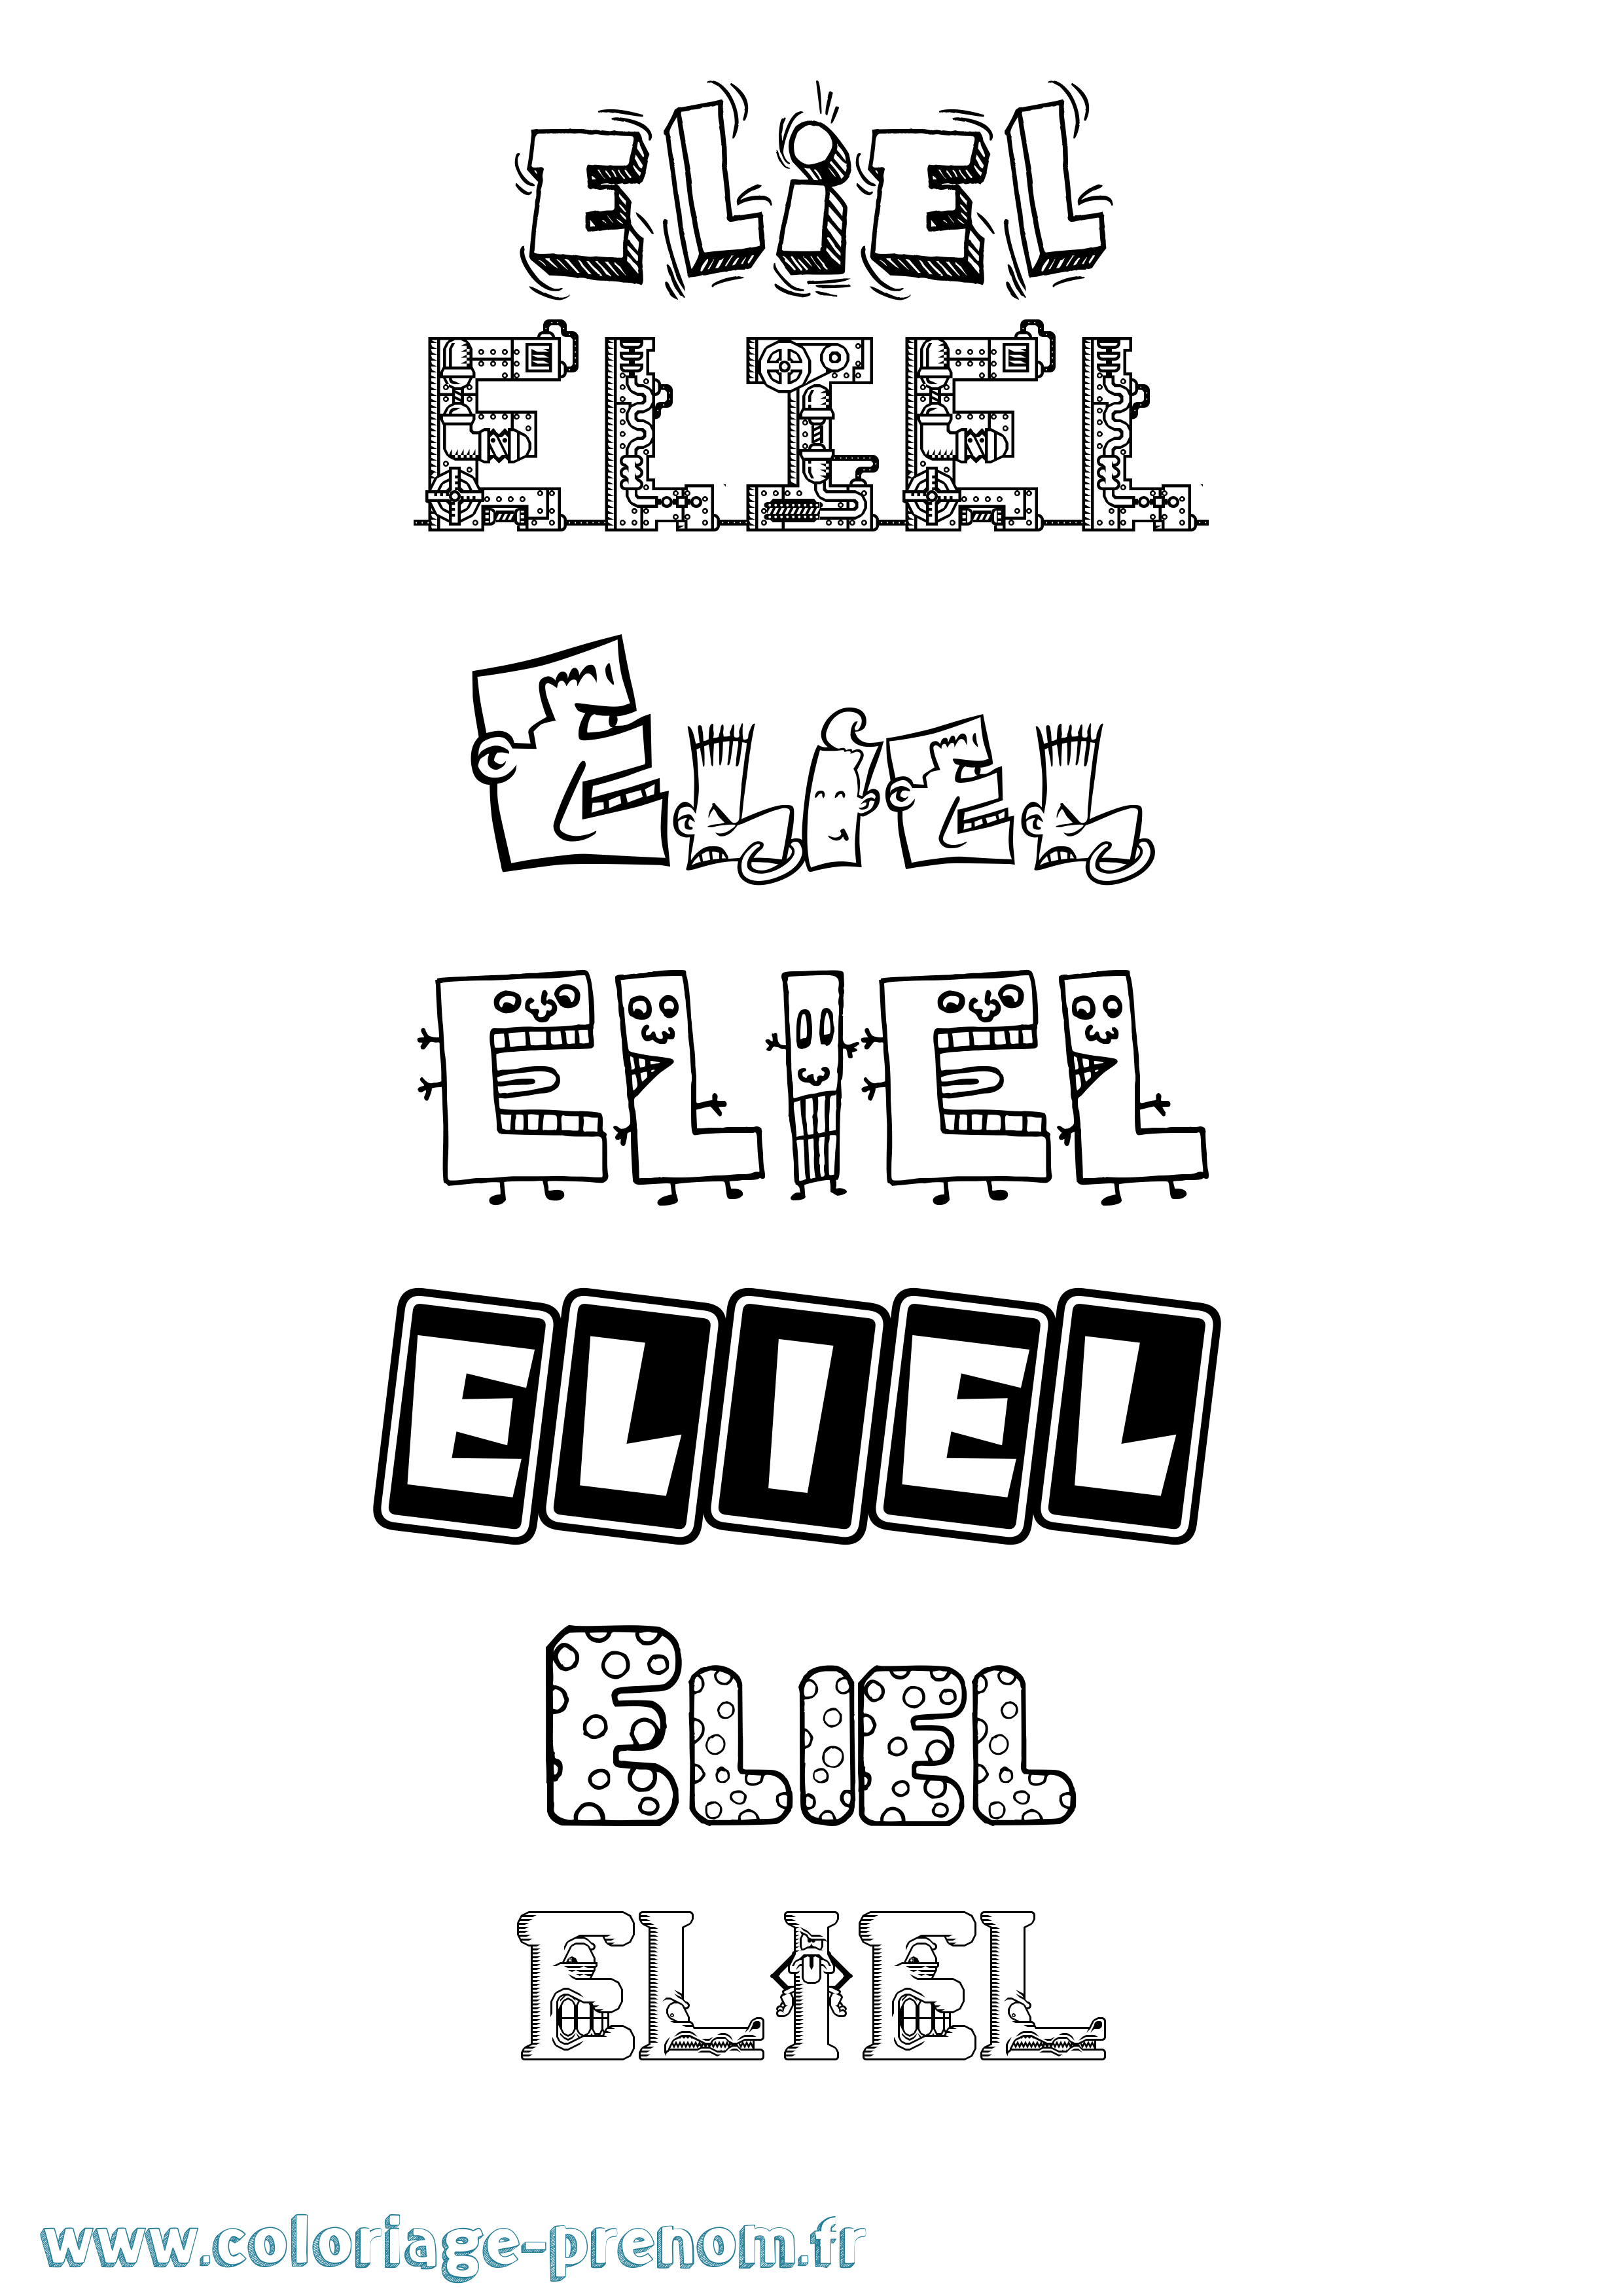 Coloriage prénom Eliel Fun